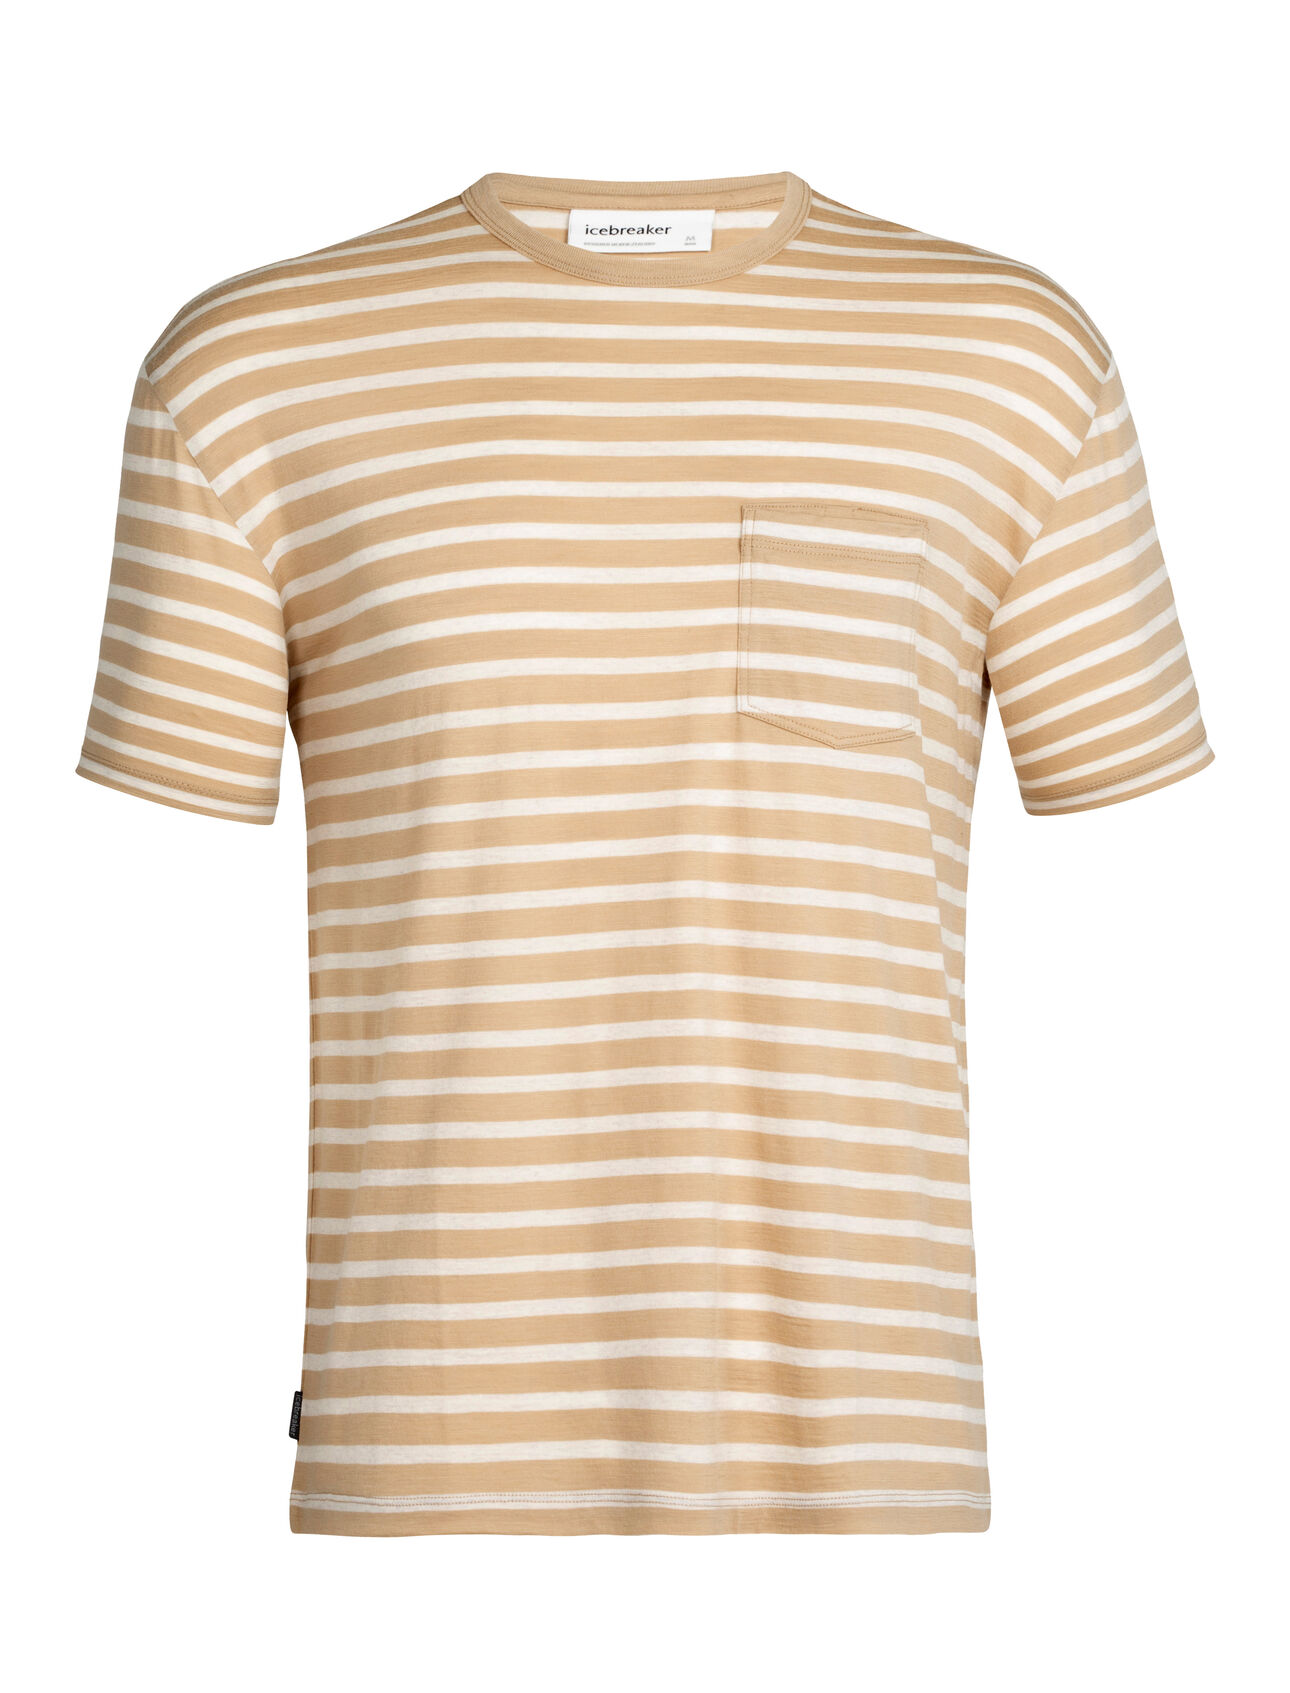 Merino Short Sleeve Pocket Stripe T-Shirt| icebreaker